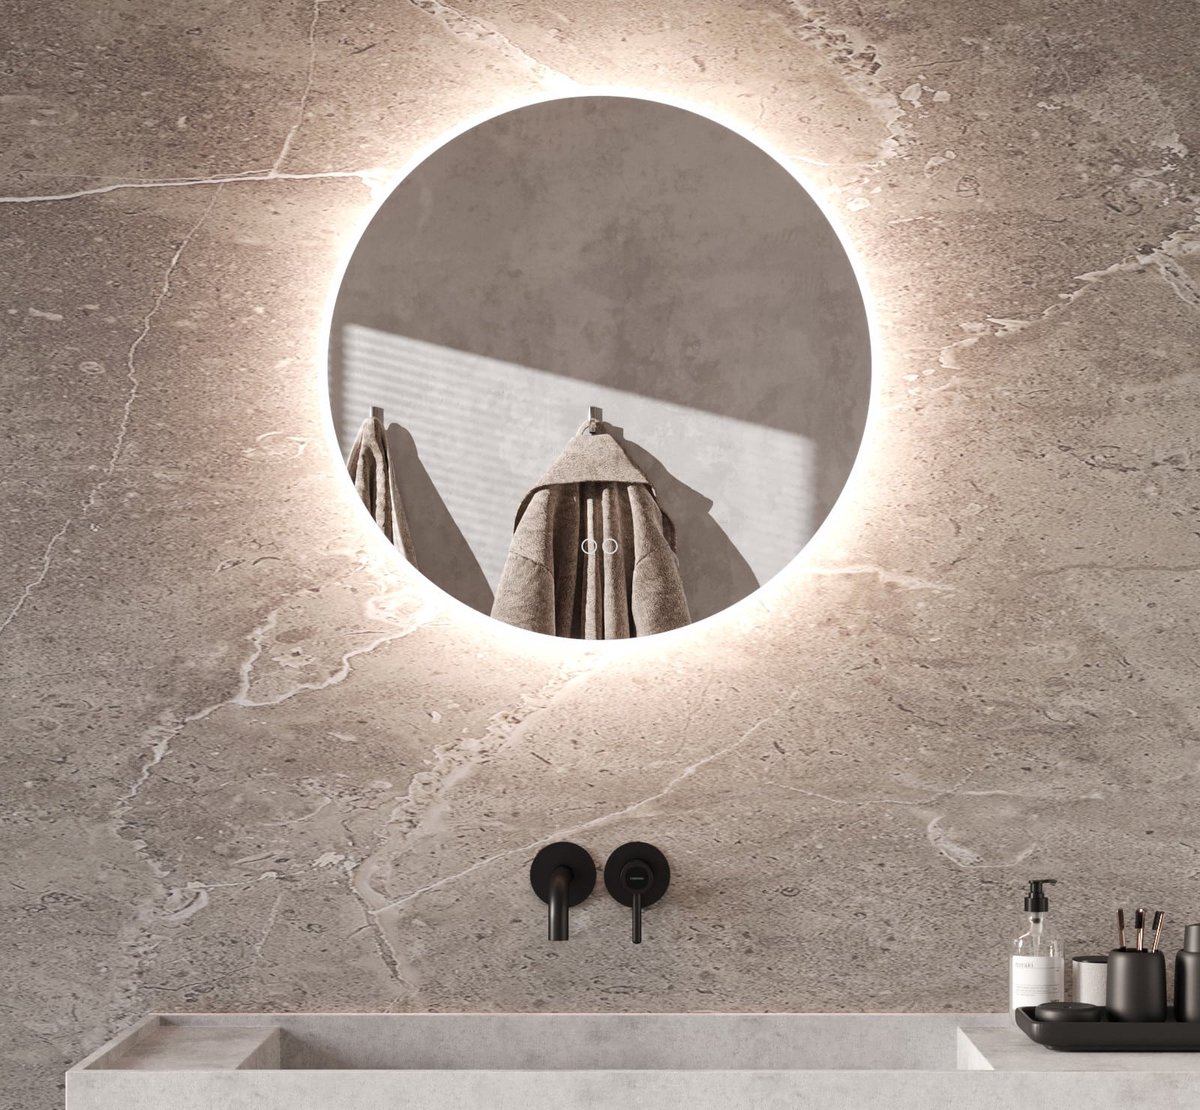 Ronde badkamerspiegel met directe en indirecte verlichting, verwarming, instelbare lichtkleur en dimfunctie 70×70 cm